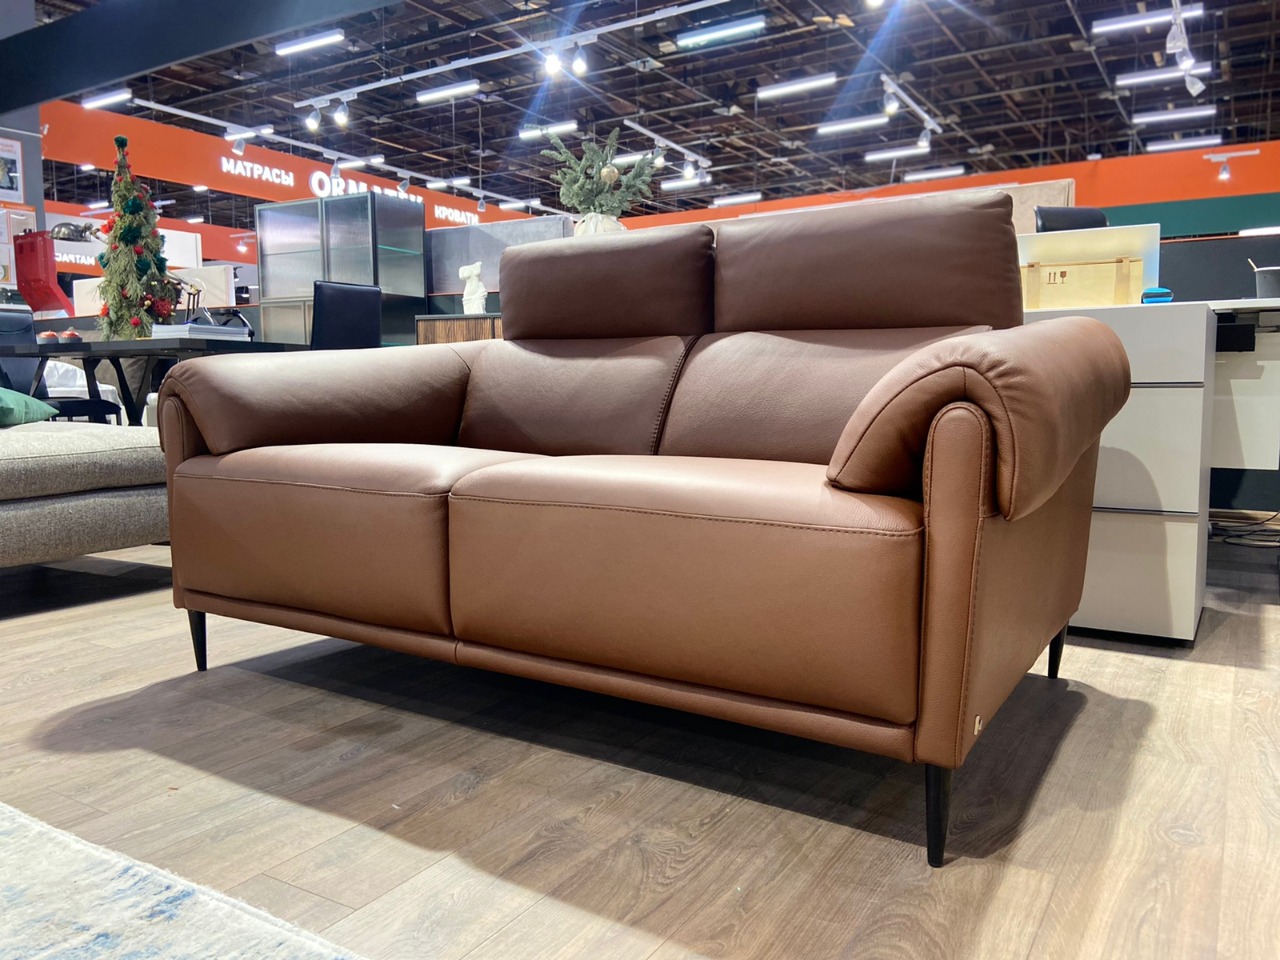 Итальянский диван от NICOLETTIHOME BRAMBLE в коже — ₽, купить у официального дилера Nicolettihome